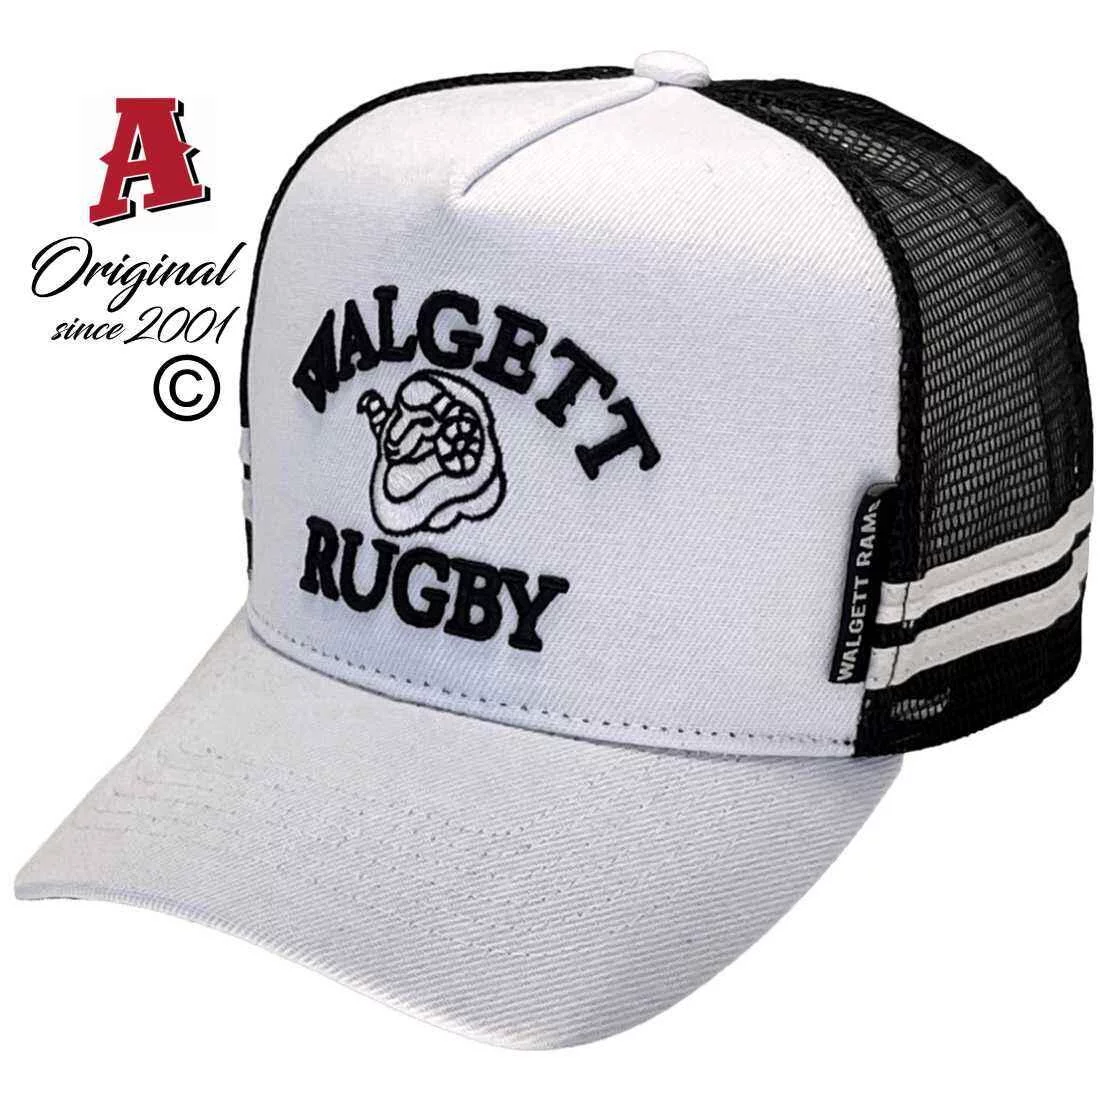 Walgett Rugby Union Walgett NSW Basic Aussie Trucker Hats with Double SideBands & Australian HeadFit Crown White Black Snapback